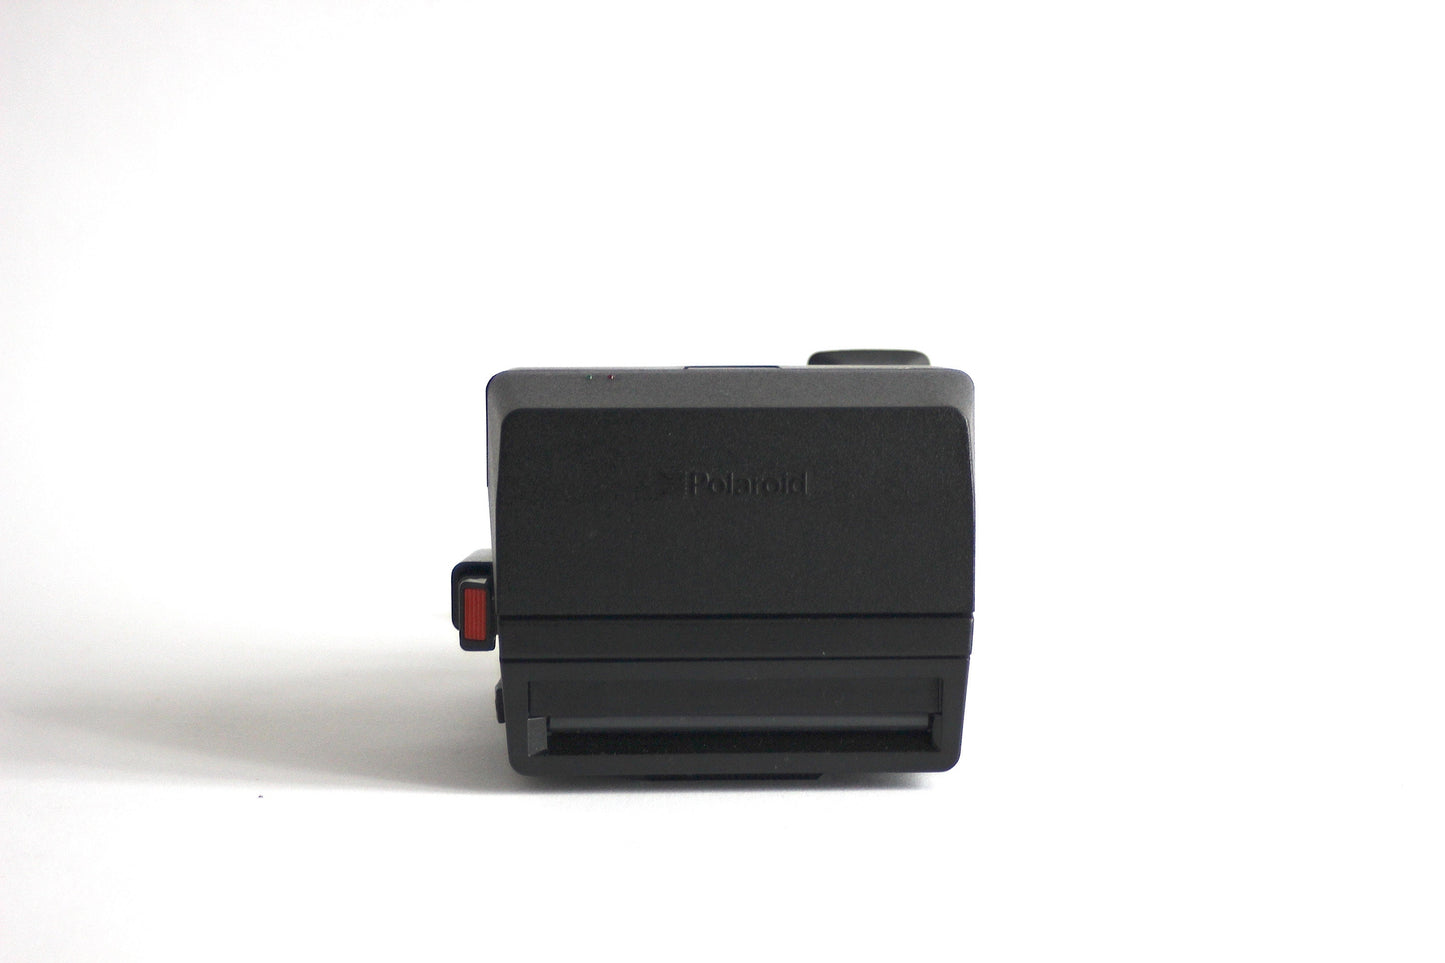 Polaroid OneStep Flash camera - Includes original box and original instructions book - 1980s